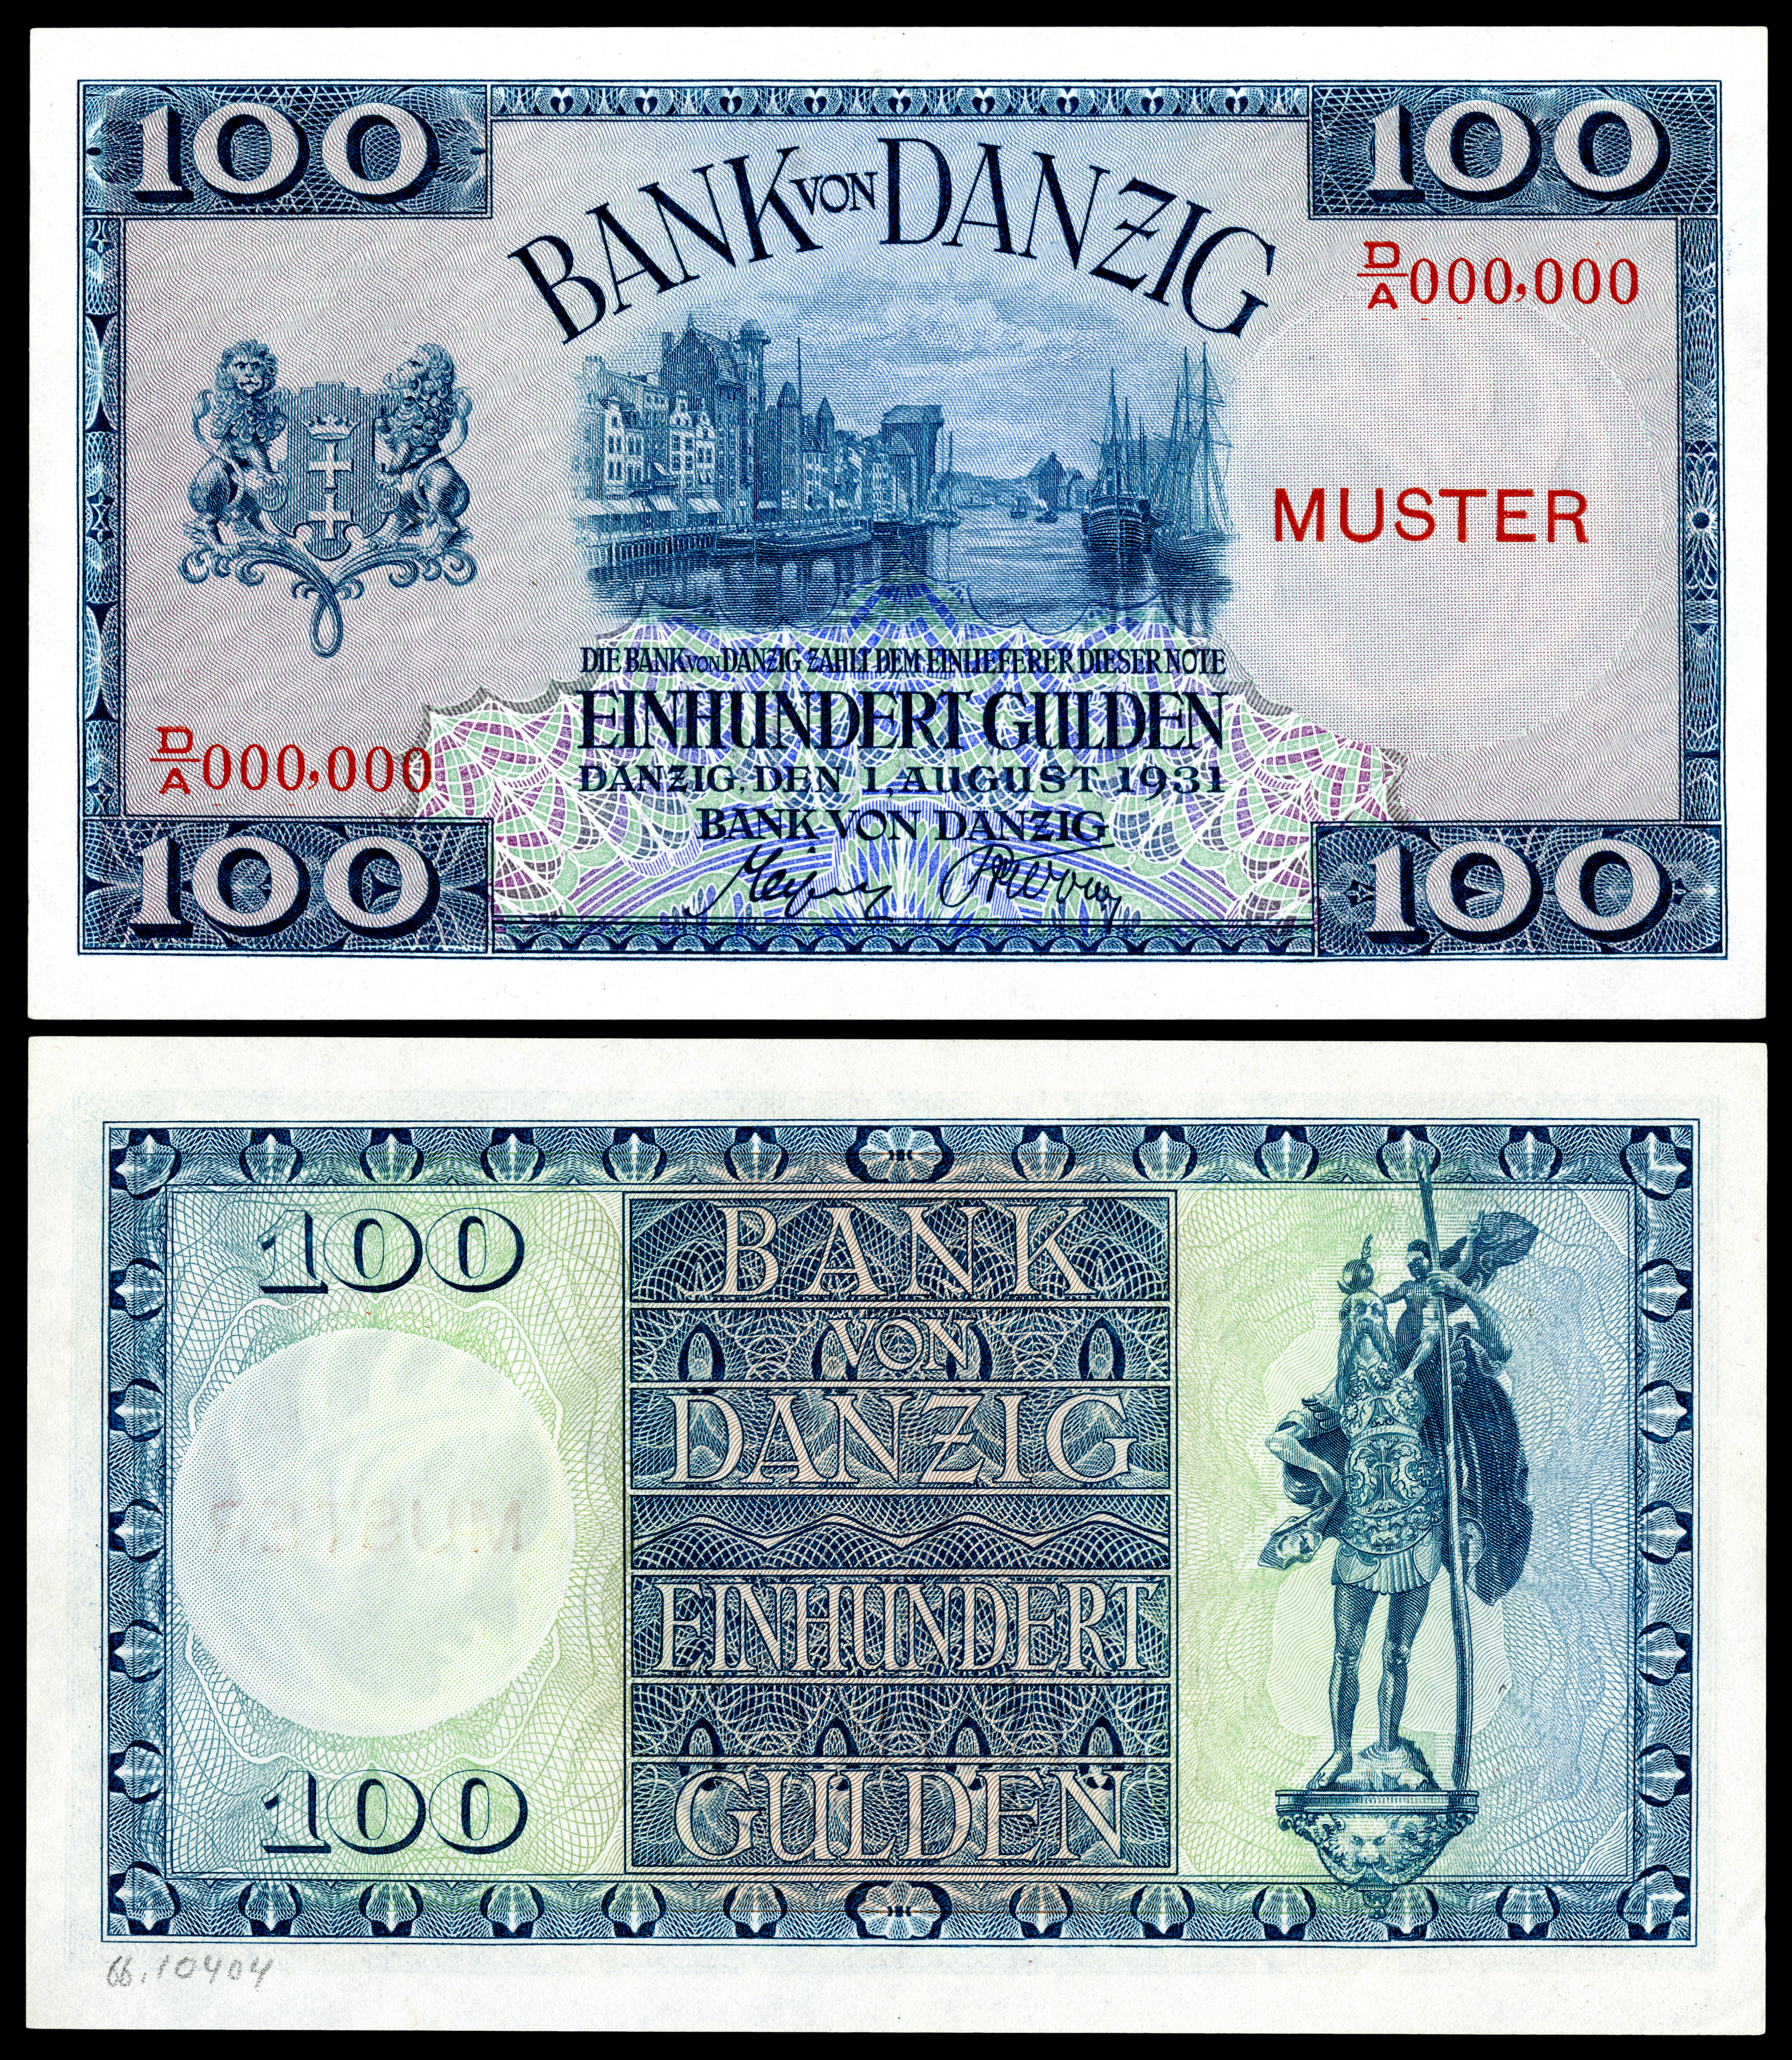 DAN-62-Bank von Danzig-100 Gulden (1931, specimen)